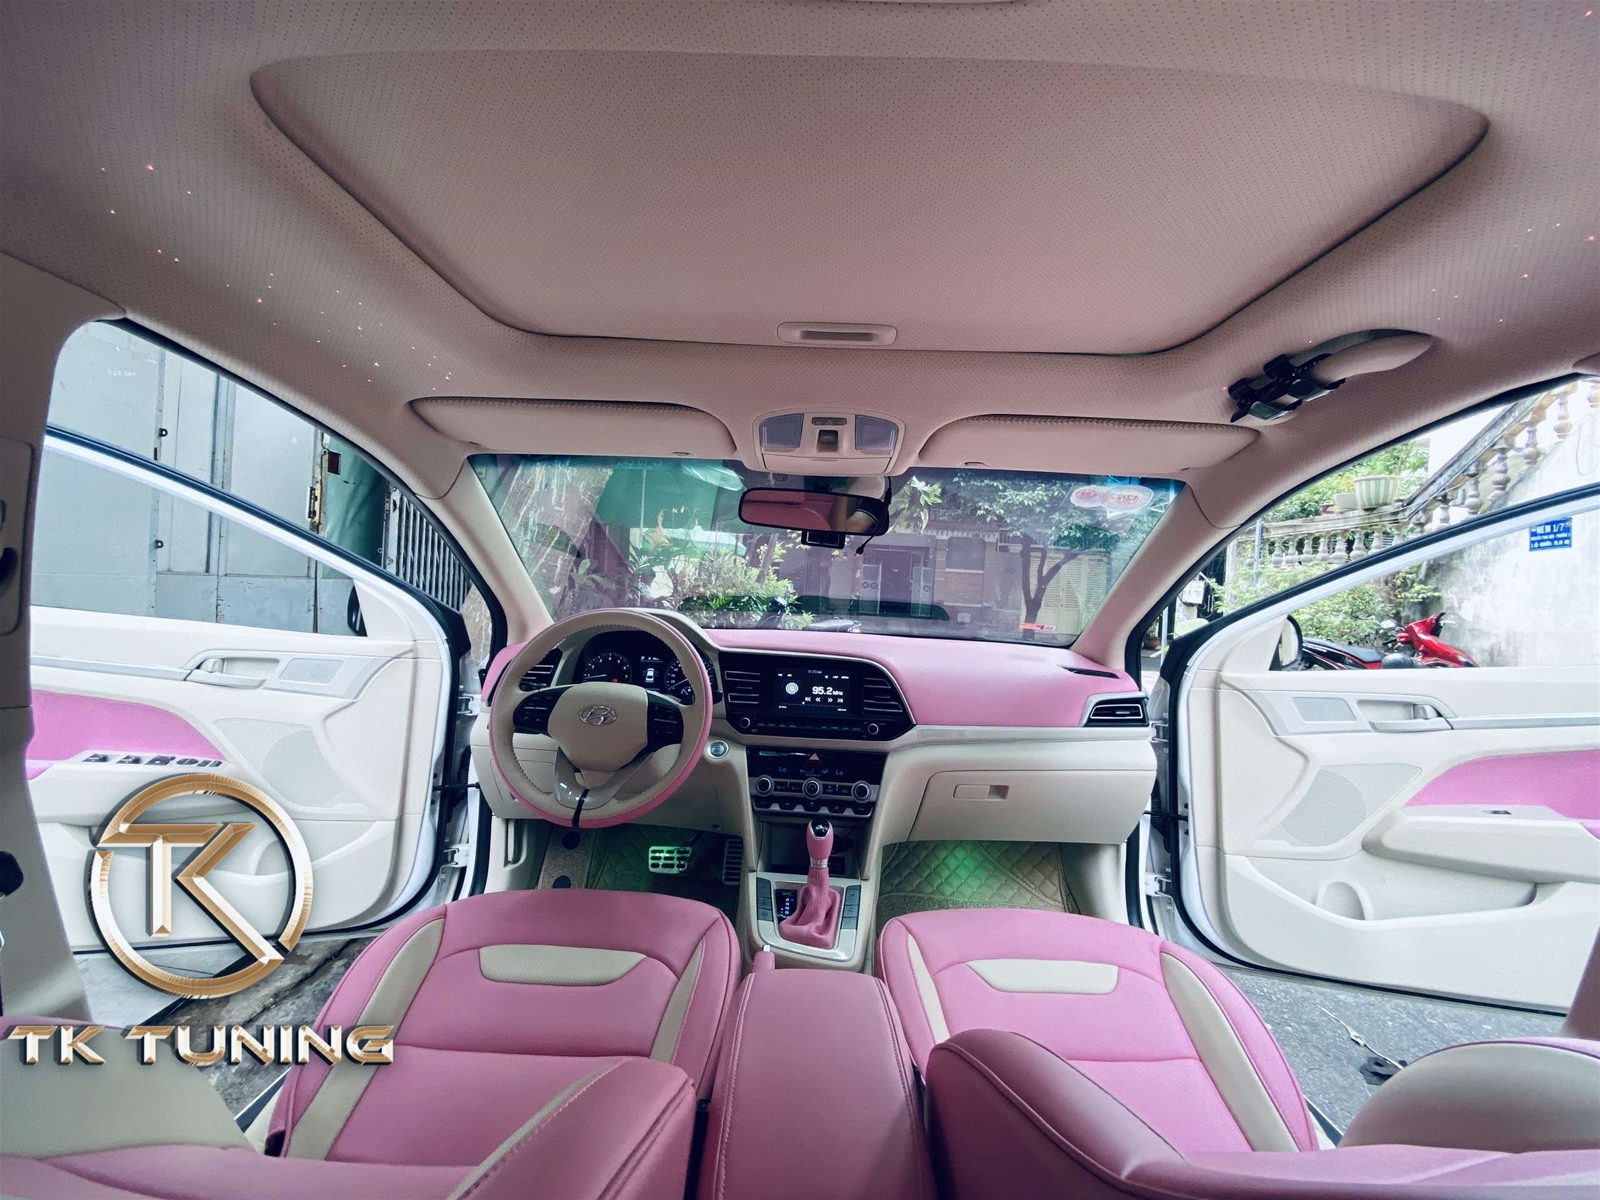 đổi màu nội thất cho xe hyundai elantra Tại Quận Bình Thạnh